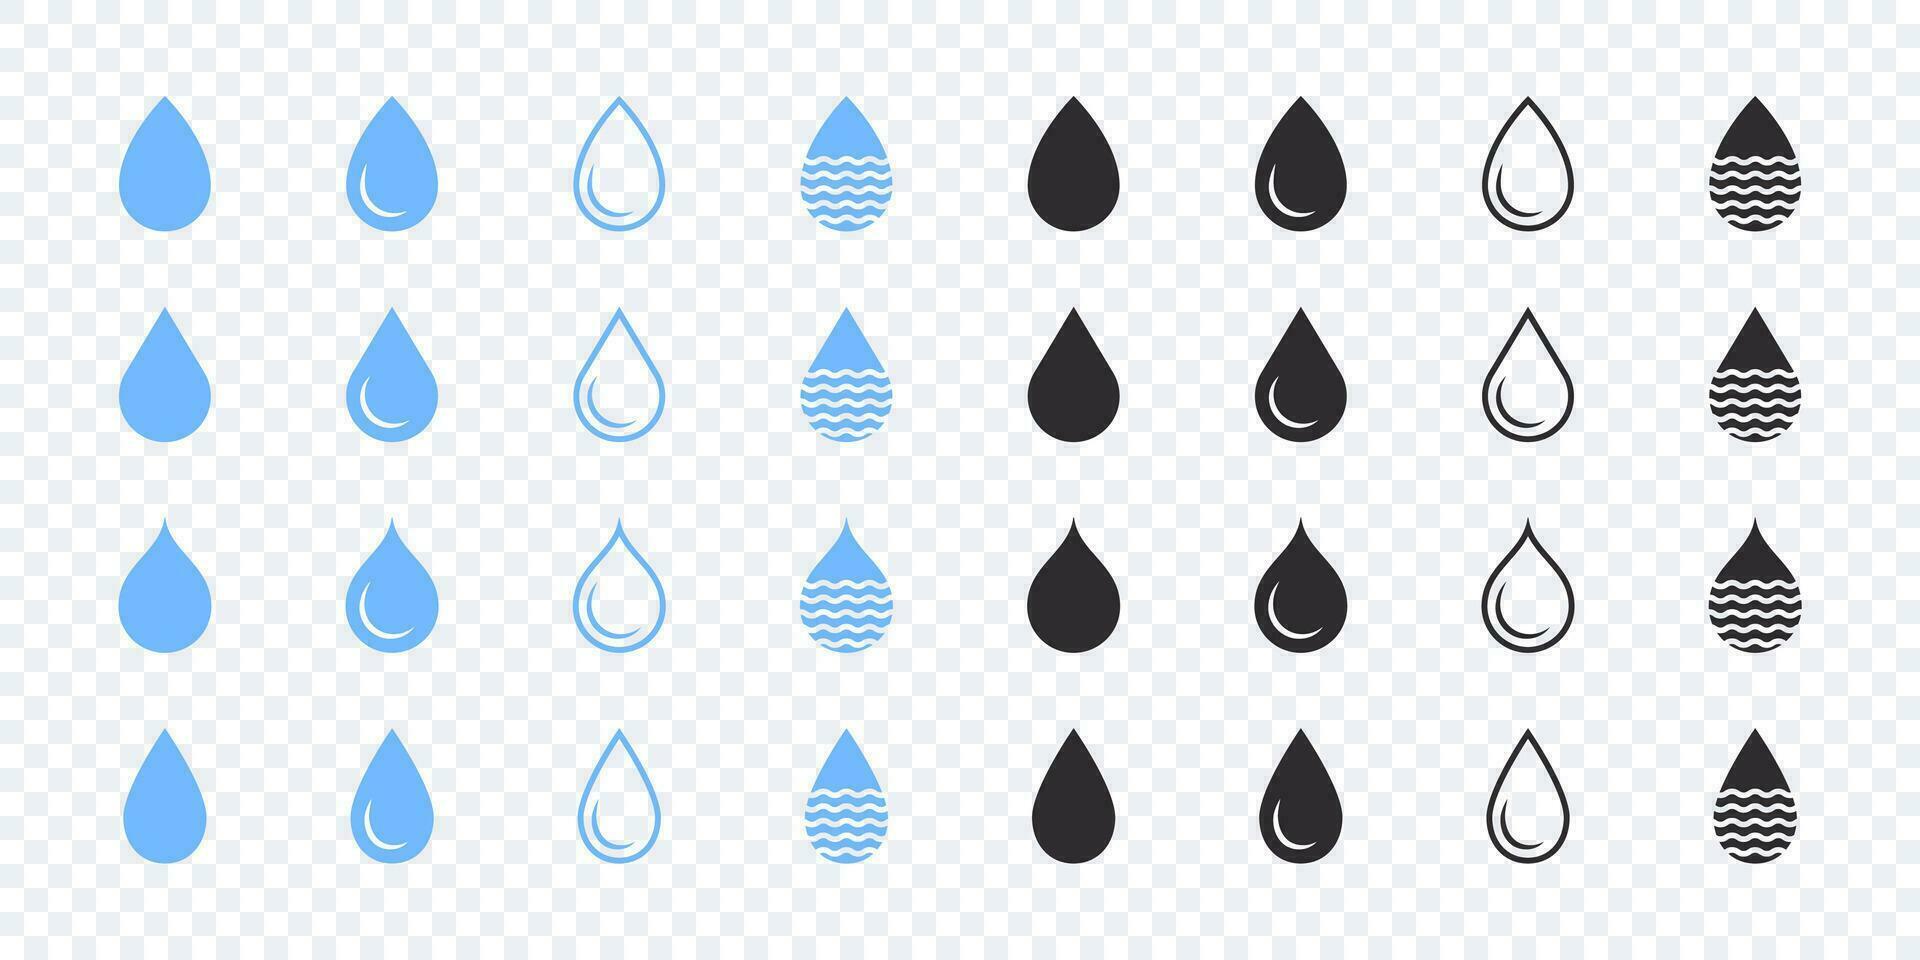 acqua gocce icone impostare. blu e nero acqua gocce icone. vettore scalabile grafica